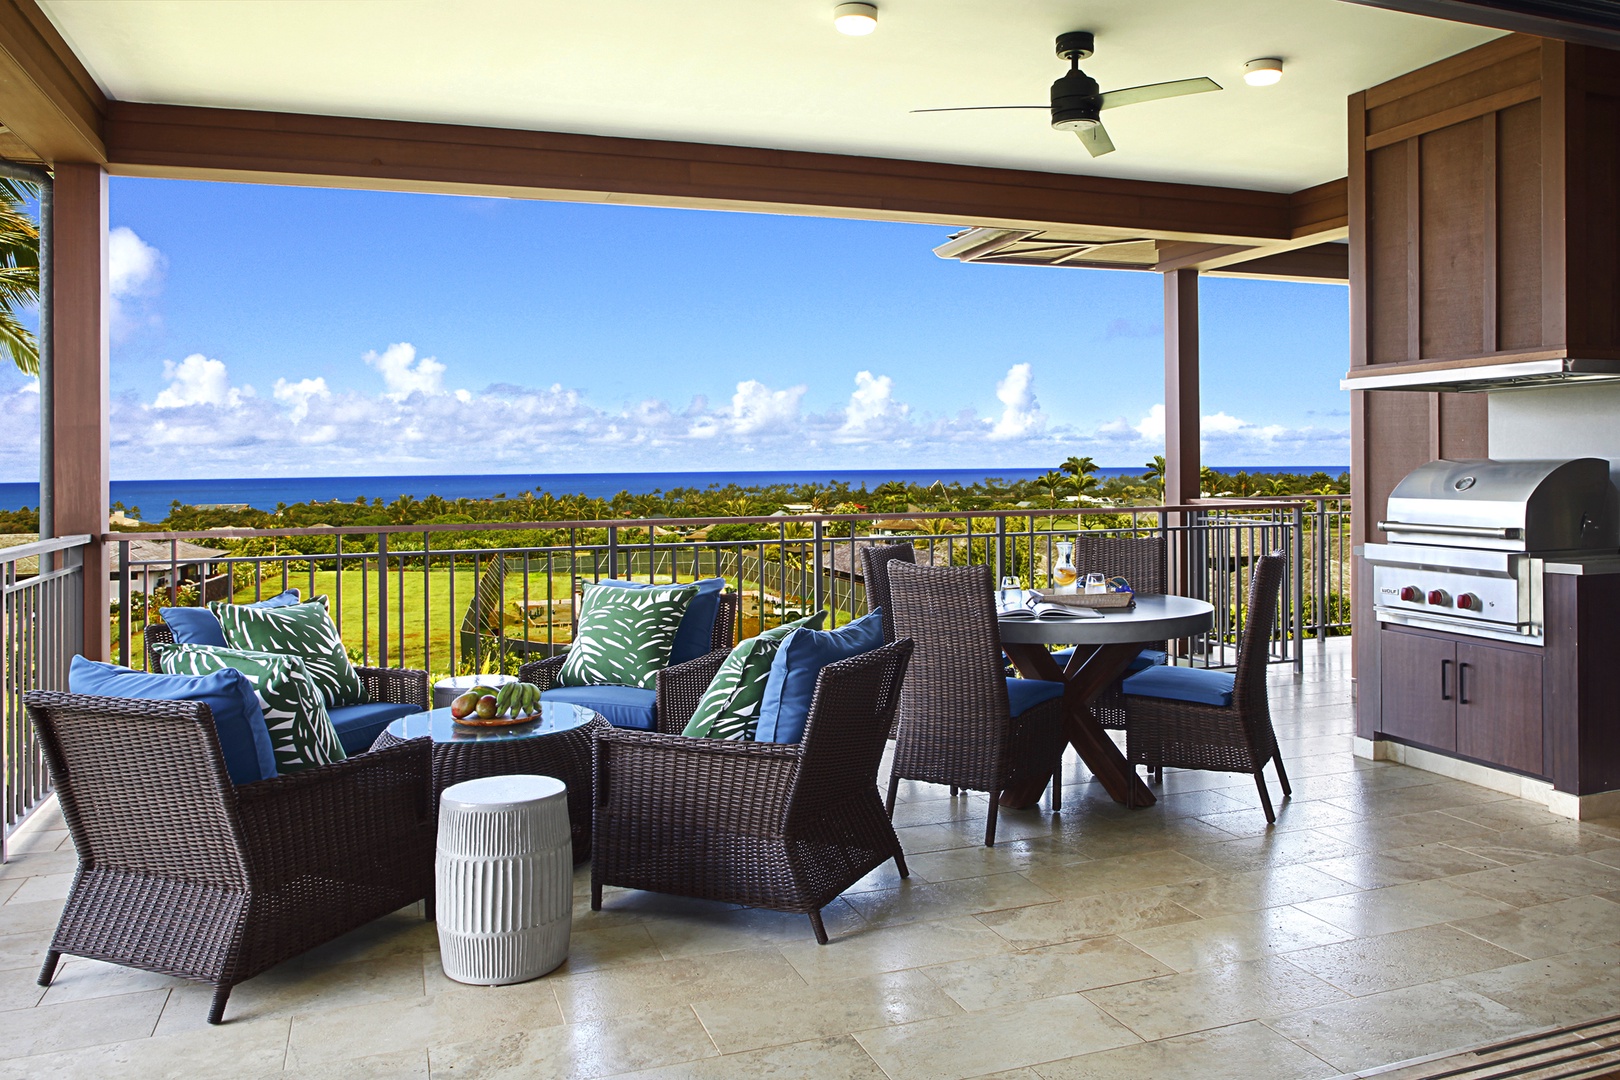 Koloa Vacation Rentals, Kainani Villa #8 - Lanai seating with outdoor dining and gas BBQ